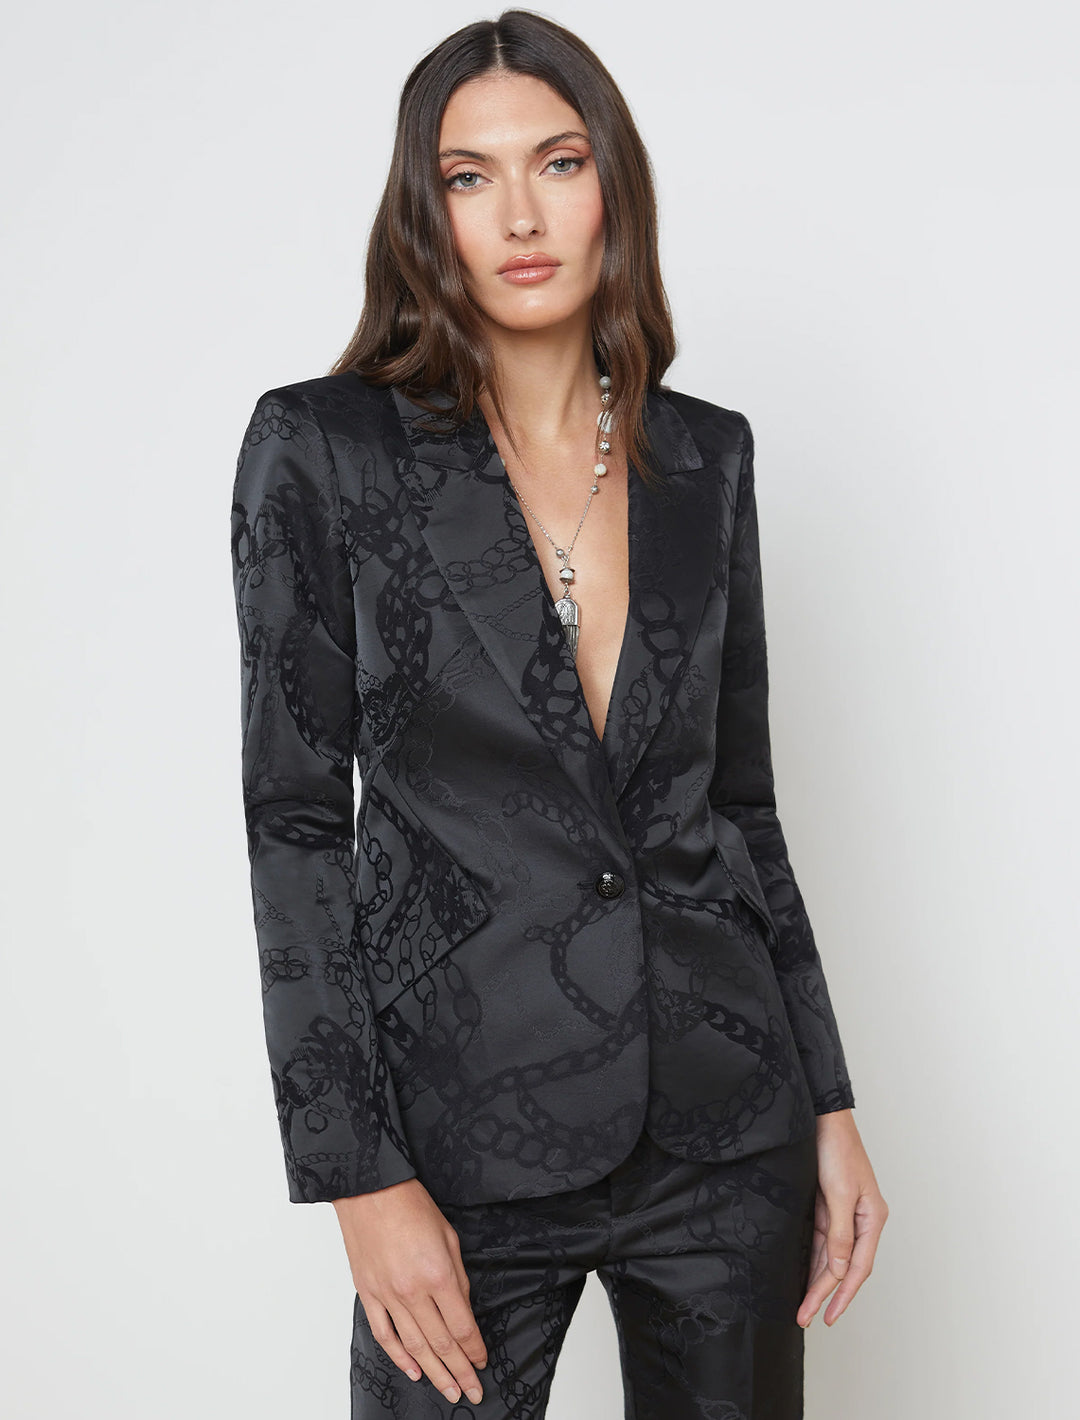 Model wearing L'agence's chamberlin blazer in black multi chain.